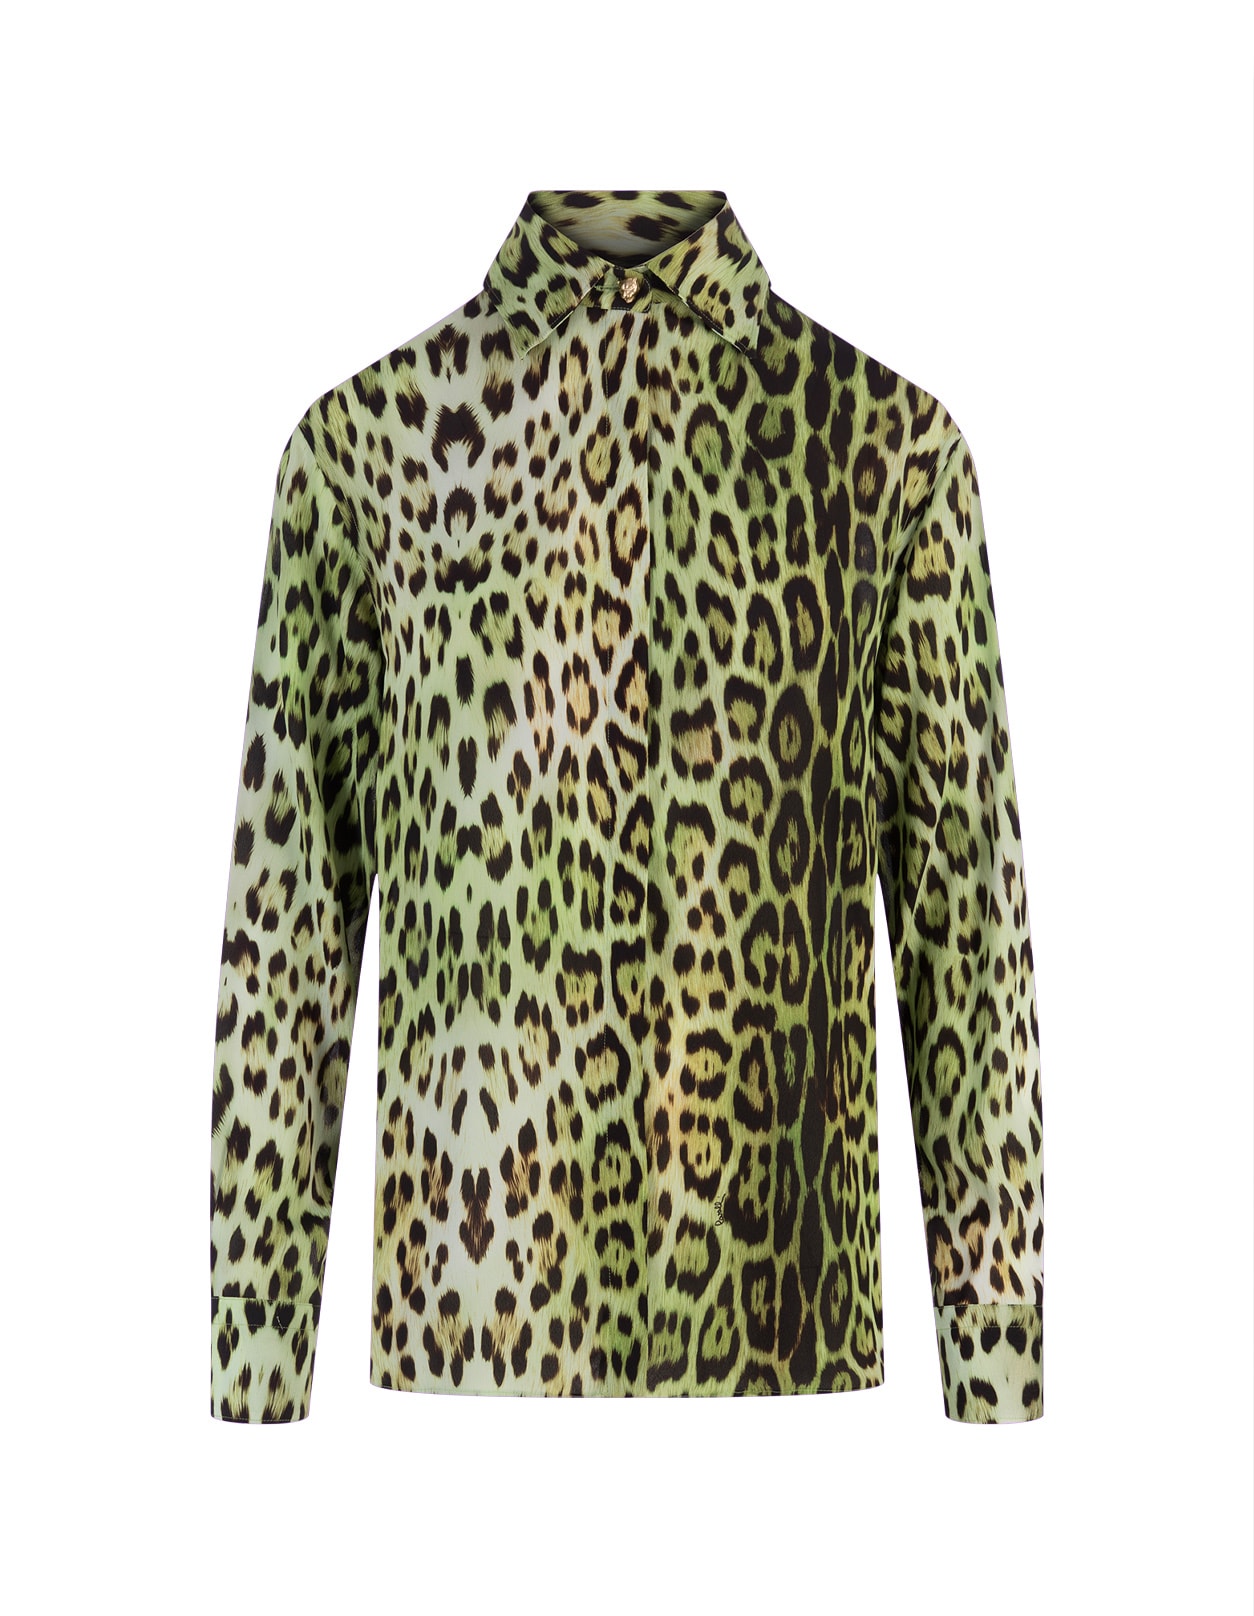 Roberto Cavalli Green Shirt With Jaguar Print